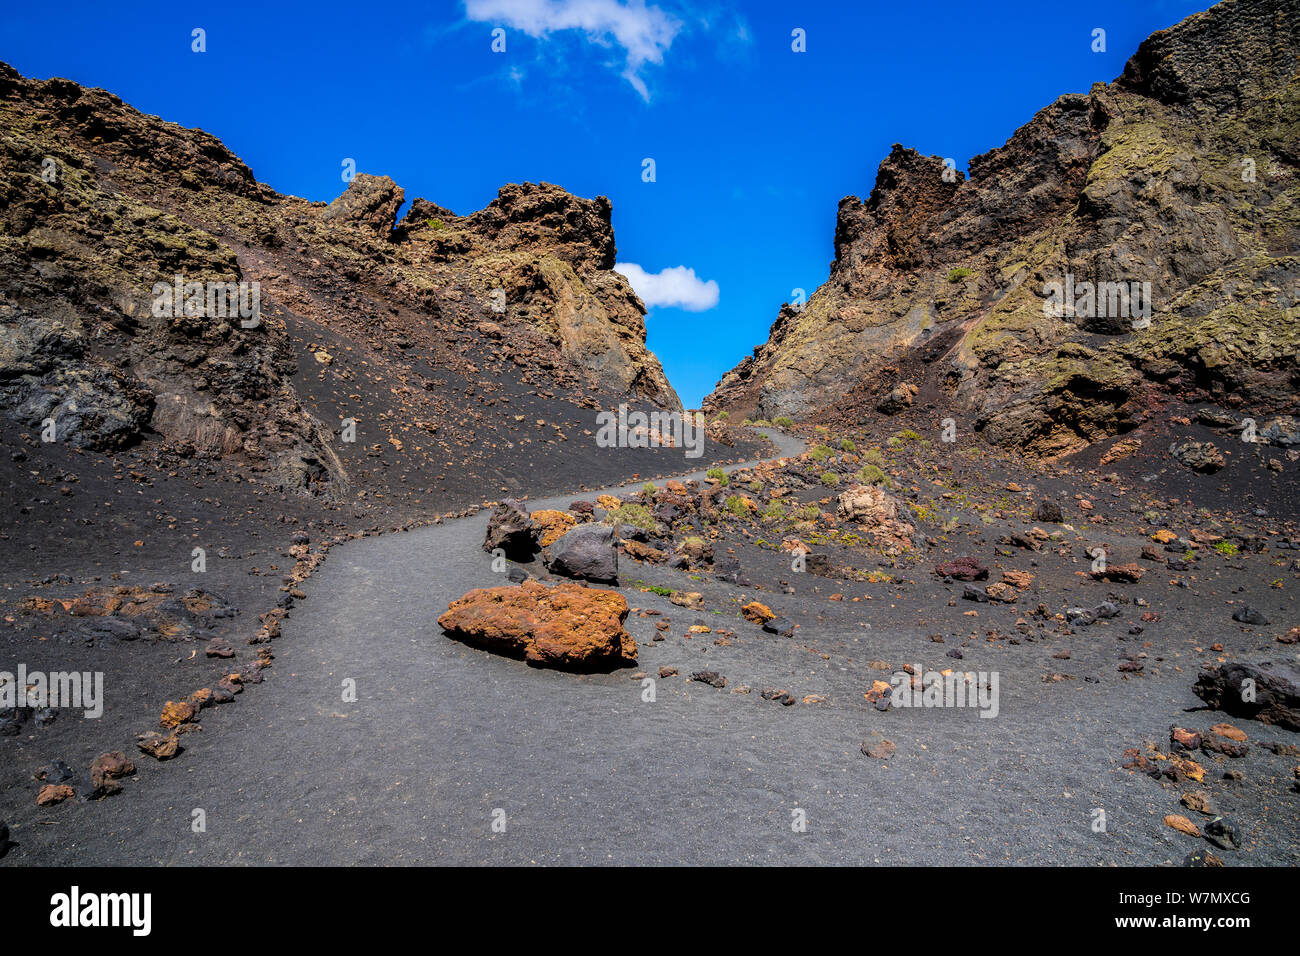 Spanien, Lanzarote, eindrucksvollen Wanderweg durch riesige Vulkanische Krater des Vulkans El Cuervo Stockfoto